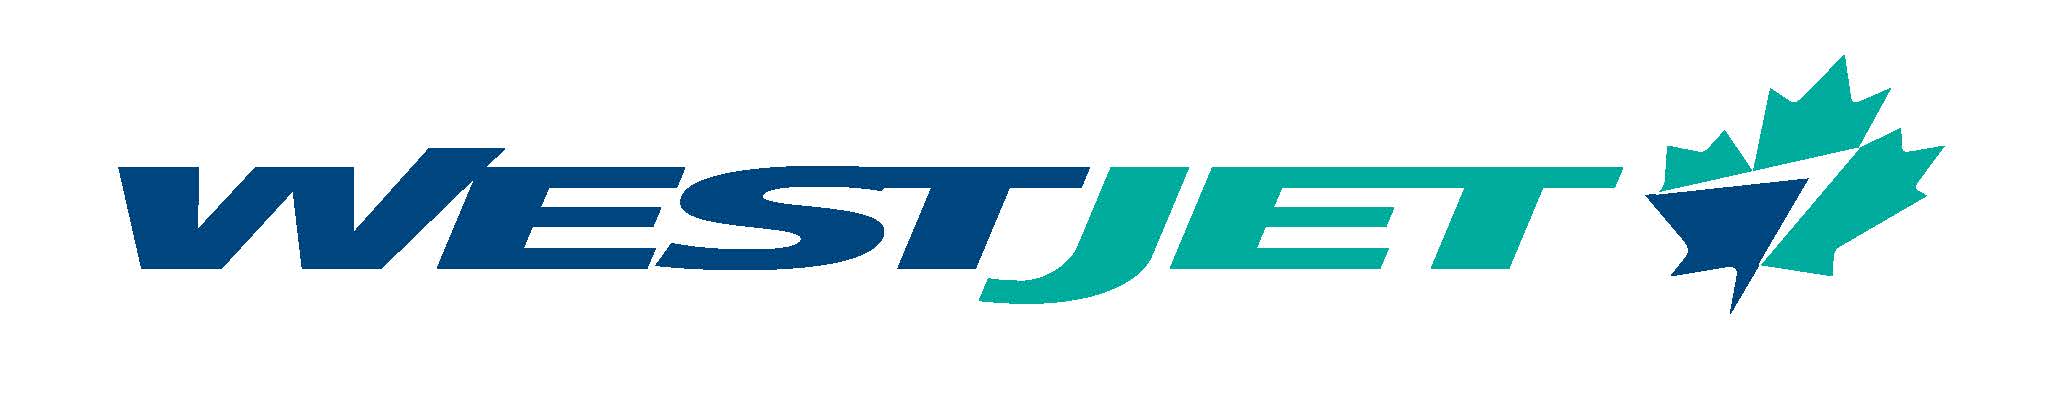 WestJet Airlines Logo